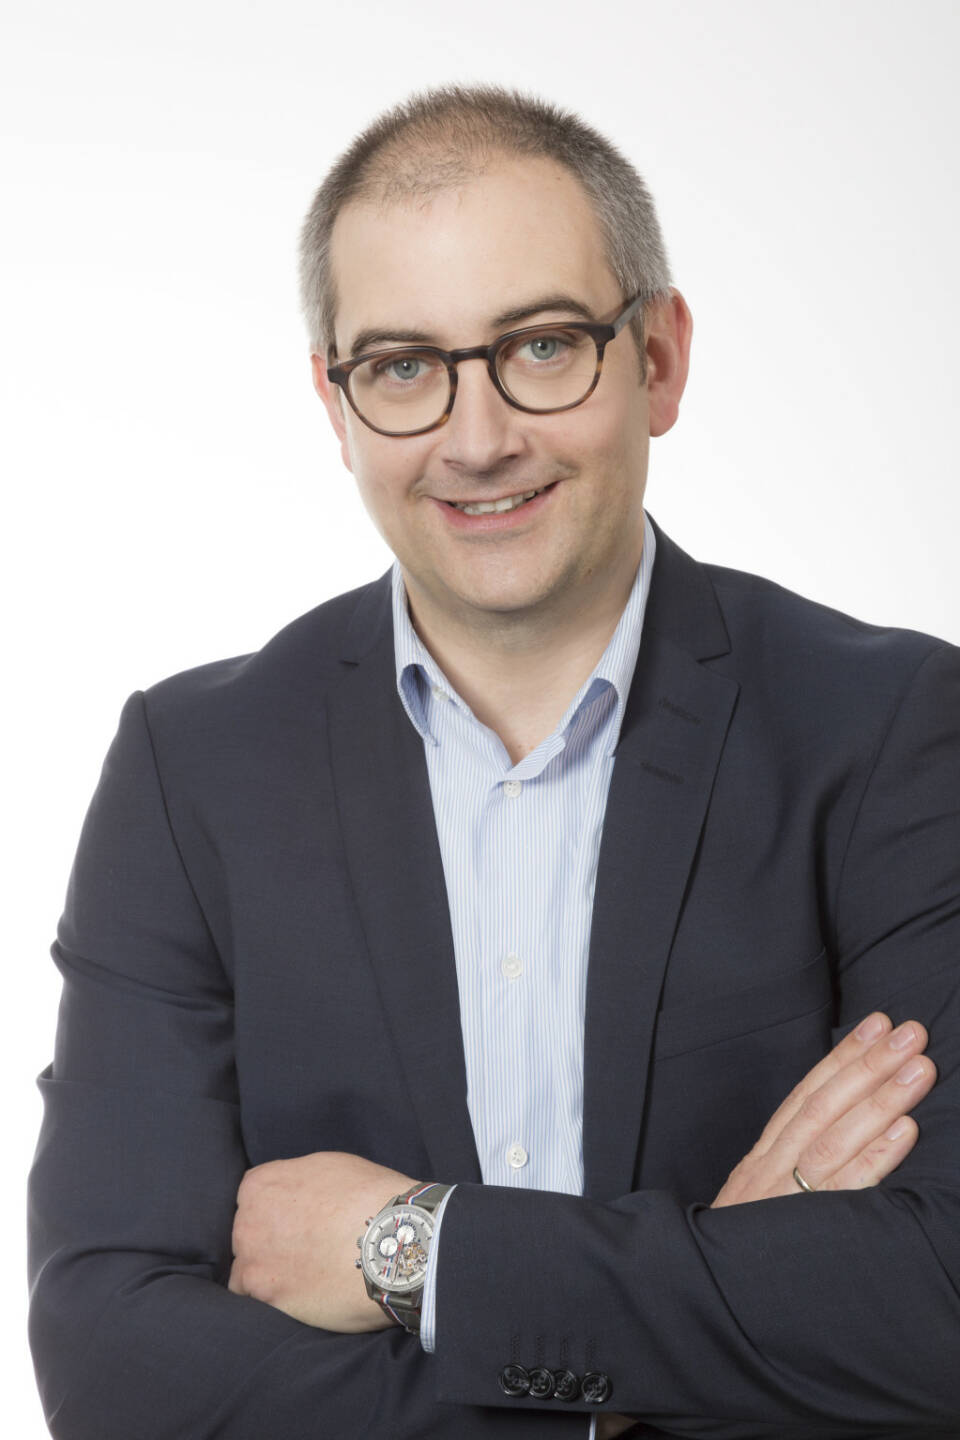 Florian Gietl ist neuer Chief Executive Officer von MediaMarktSaturn Österreich; Fotocredit:Gerald MACHER / MACHERfotografie - Urheberrechtsinhaber